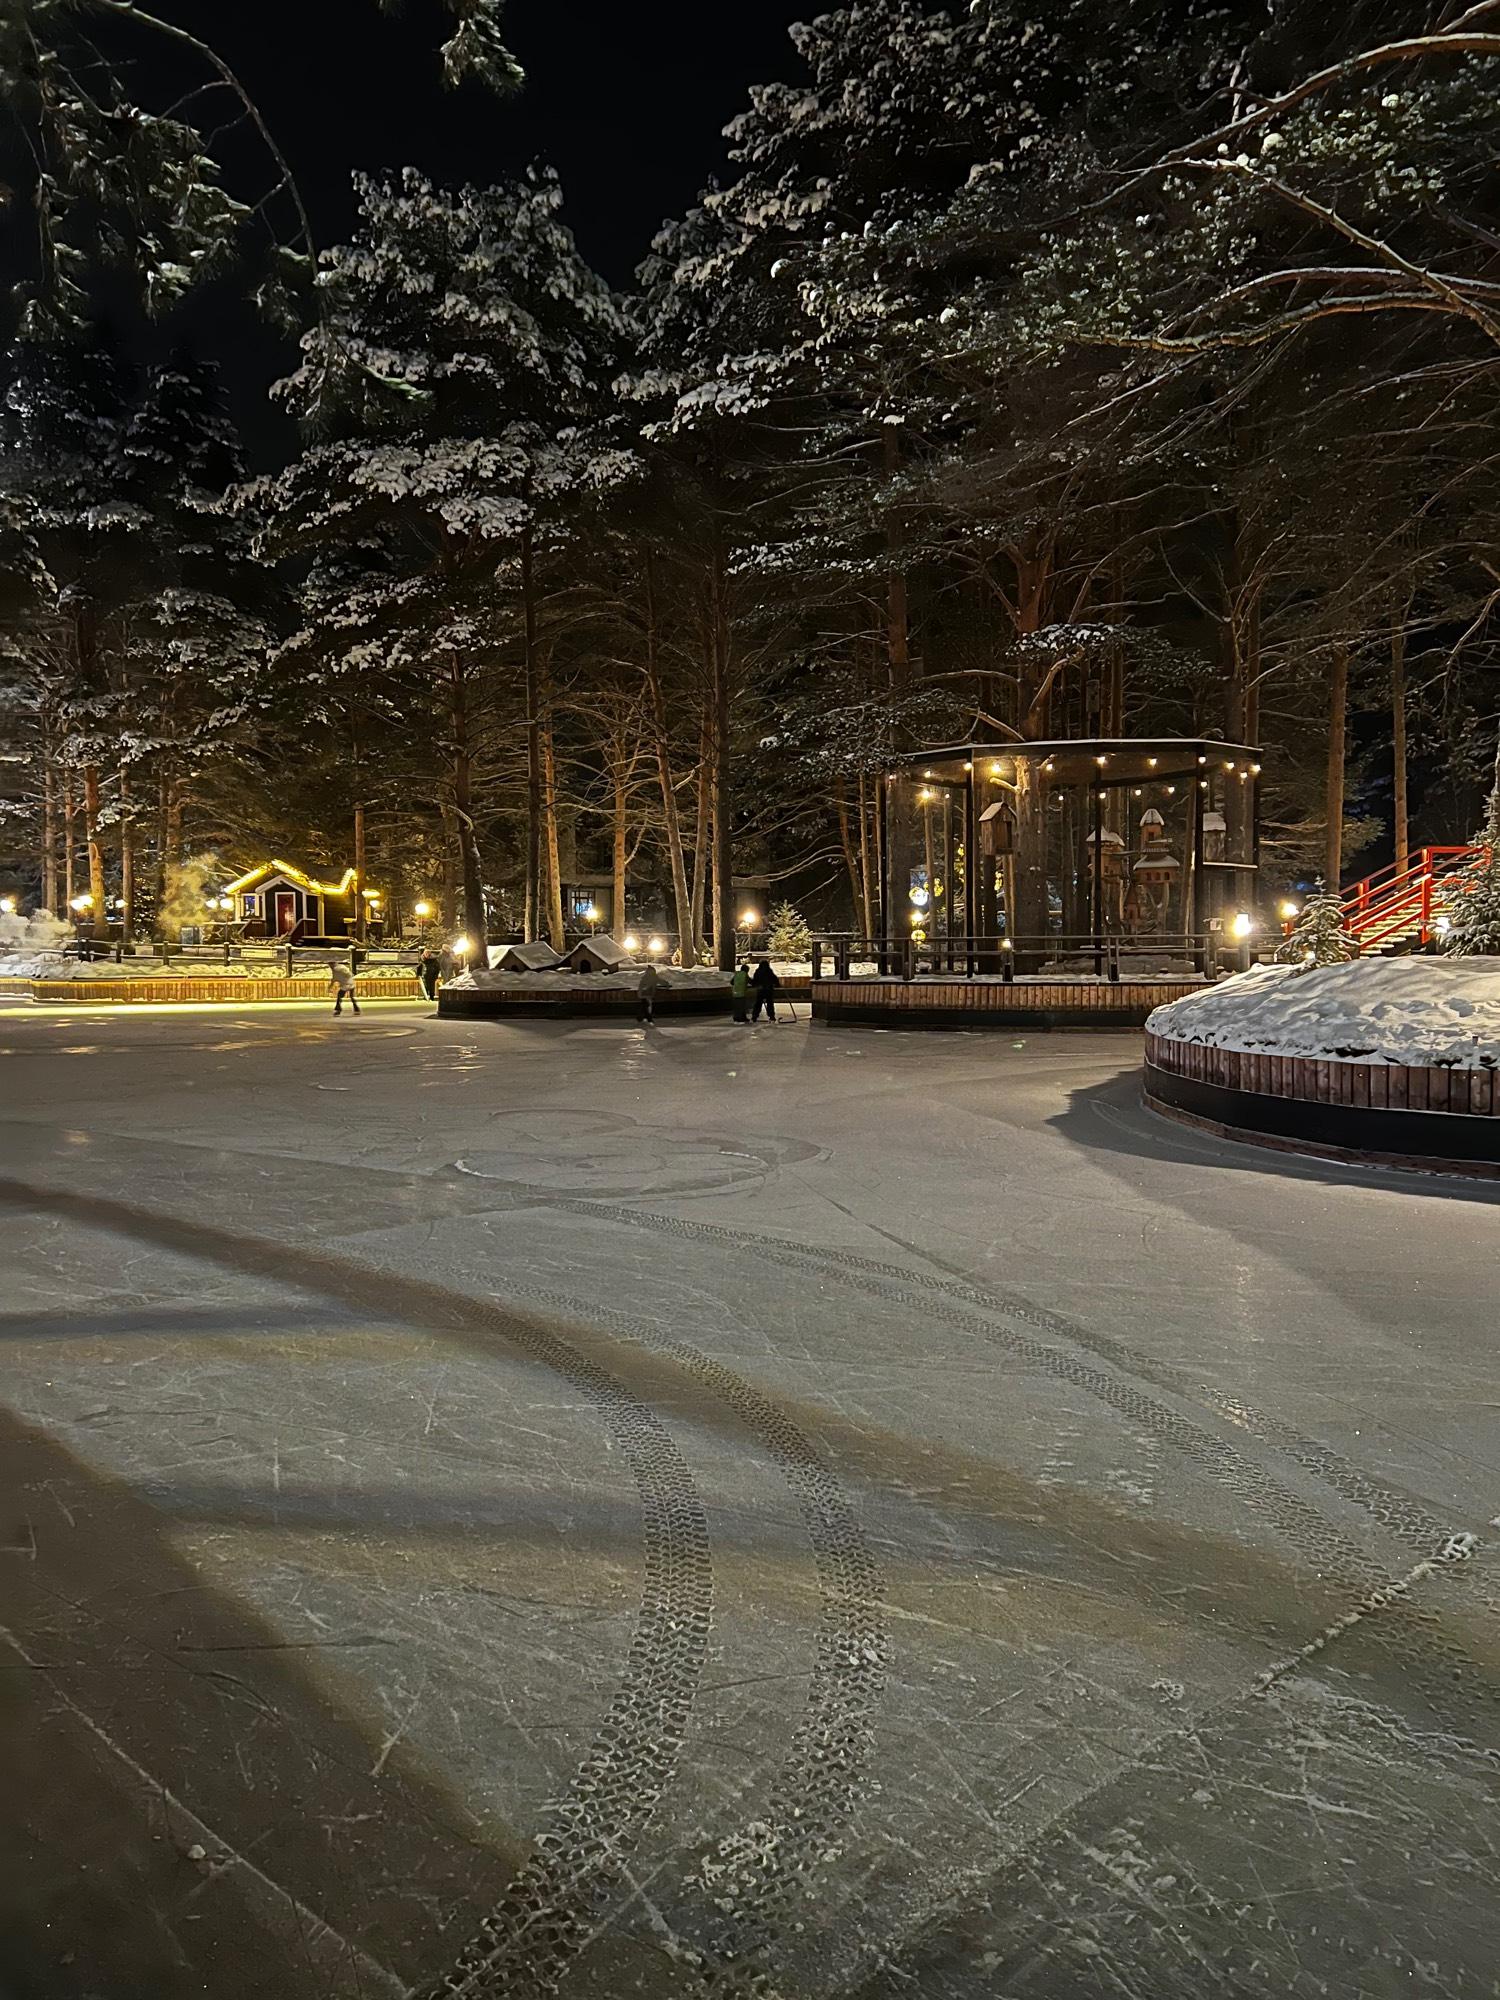 Фотонастроение: зима началась в Калуге без снега - Общество - Новости -  Калужский перекресток Калуга